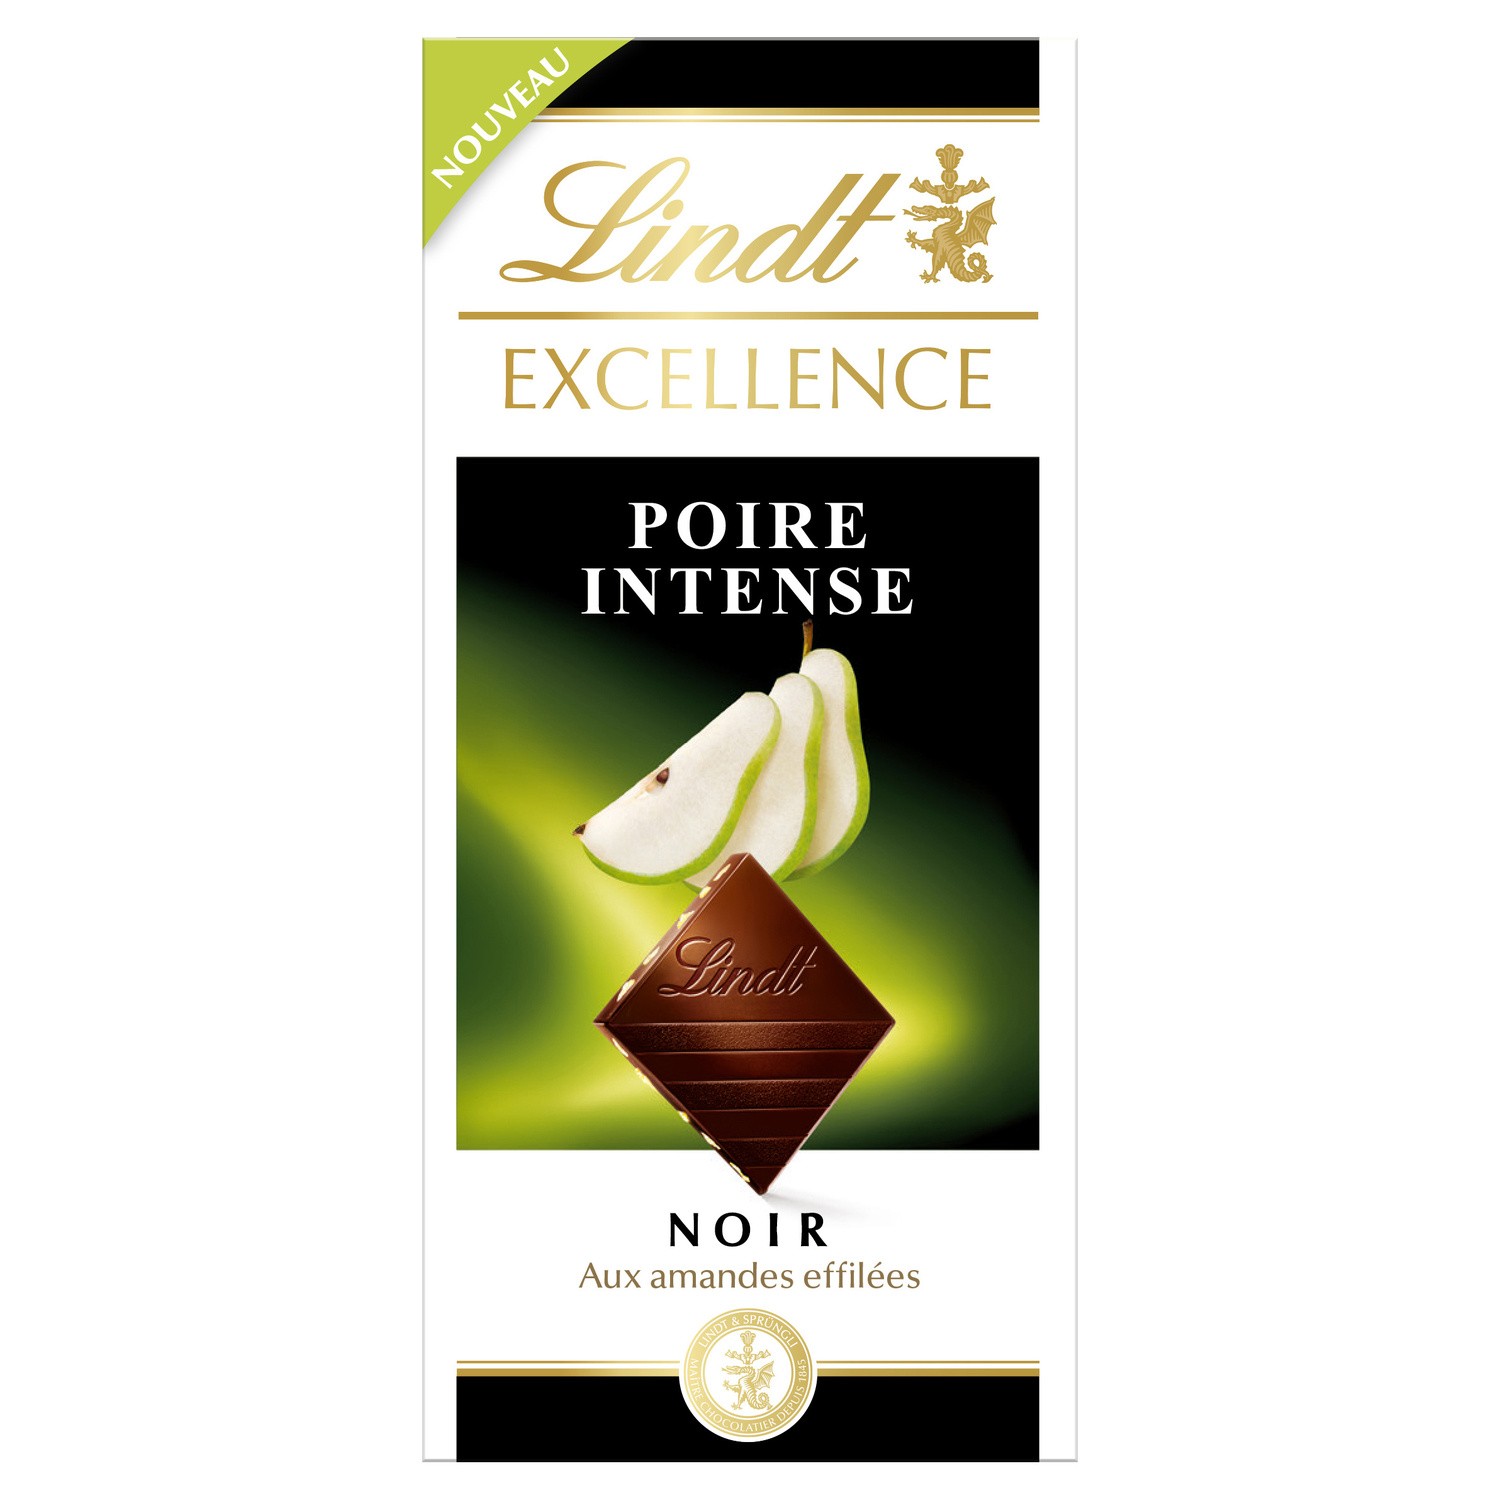 Chocolat Noir Aux amanades effilées Poire intense